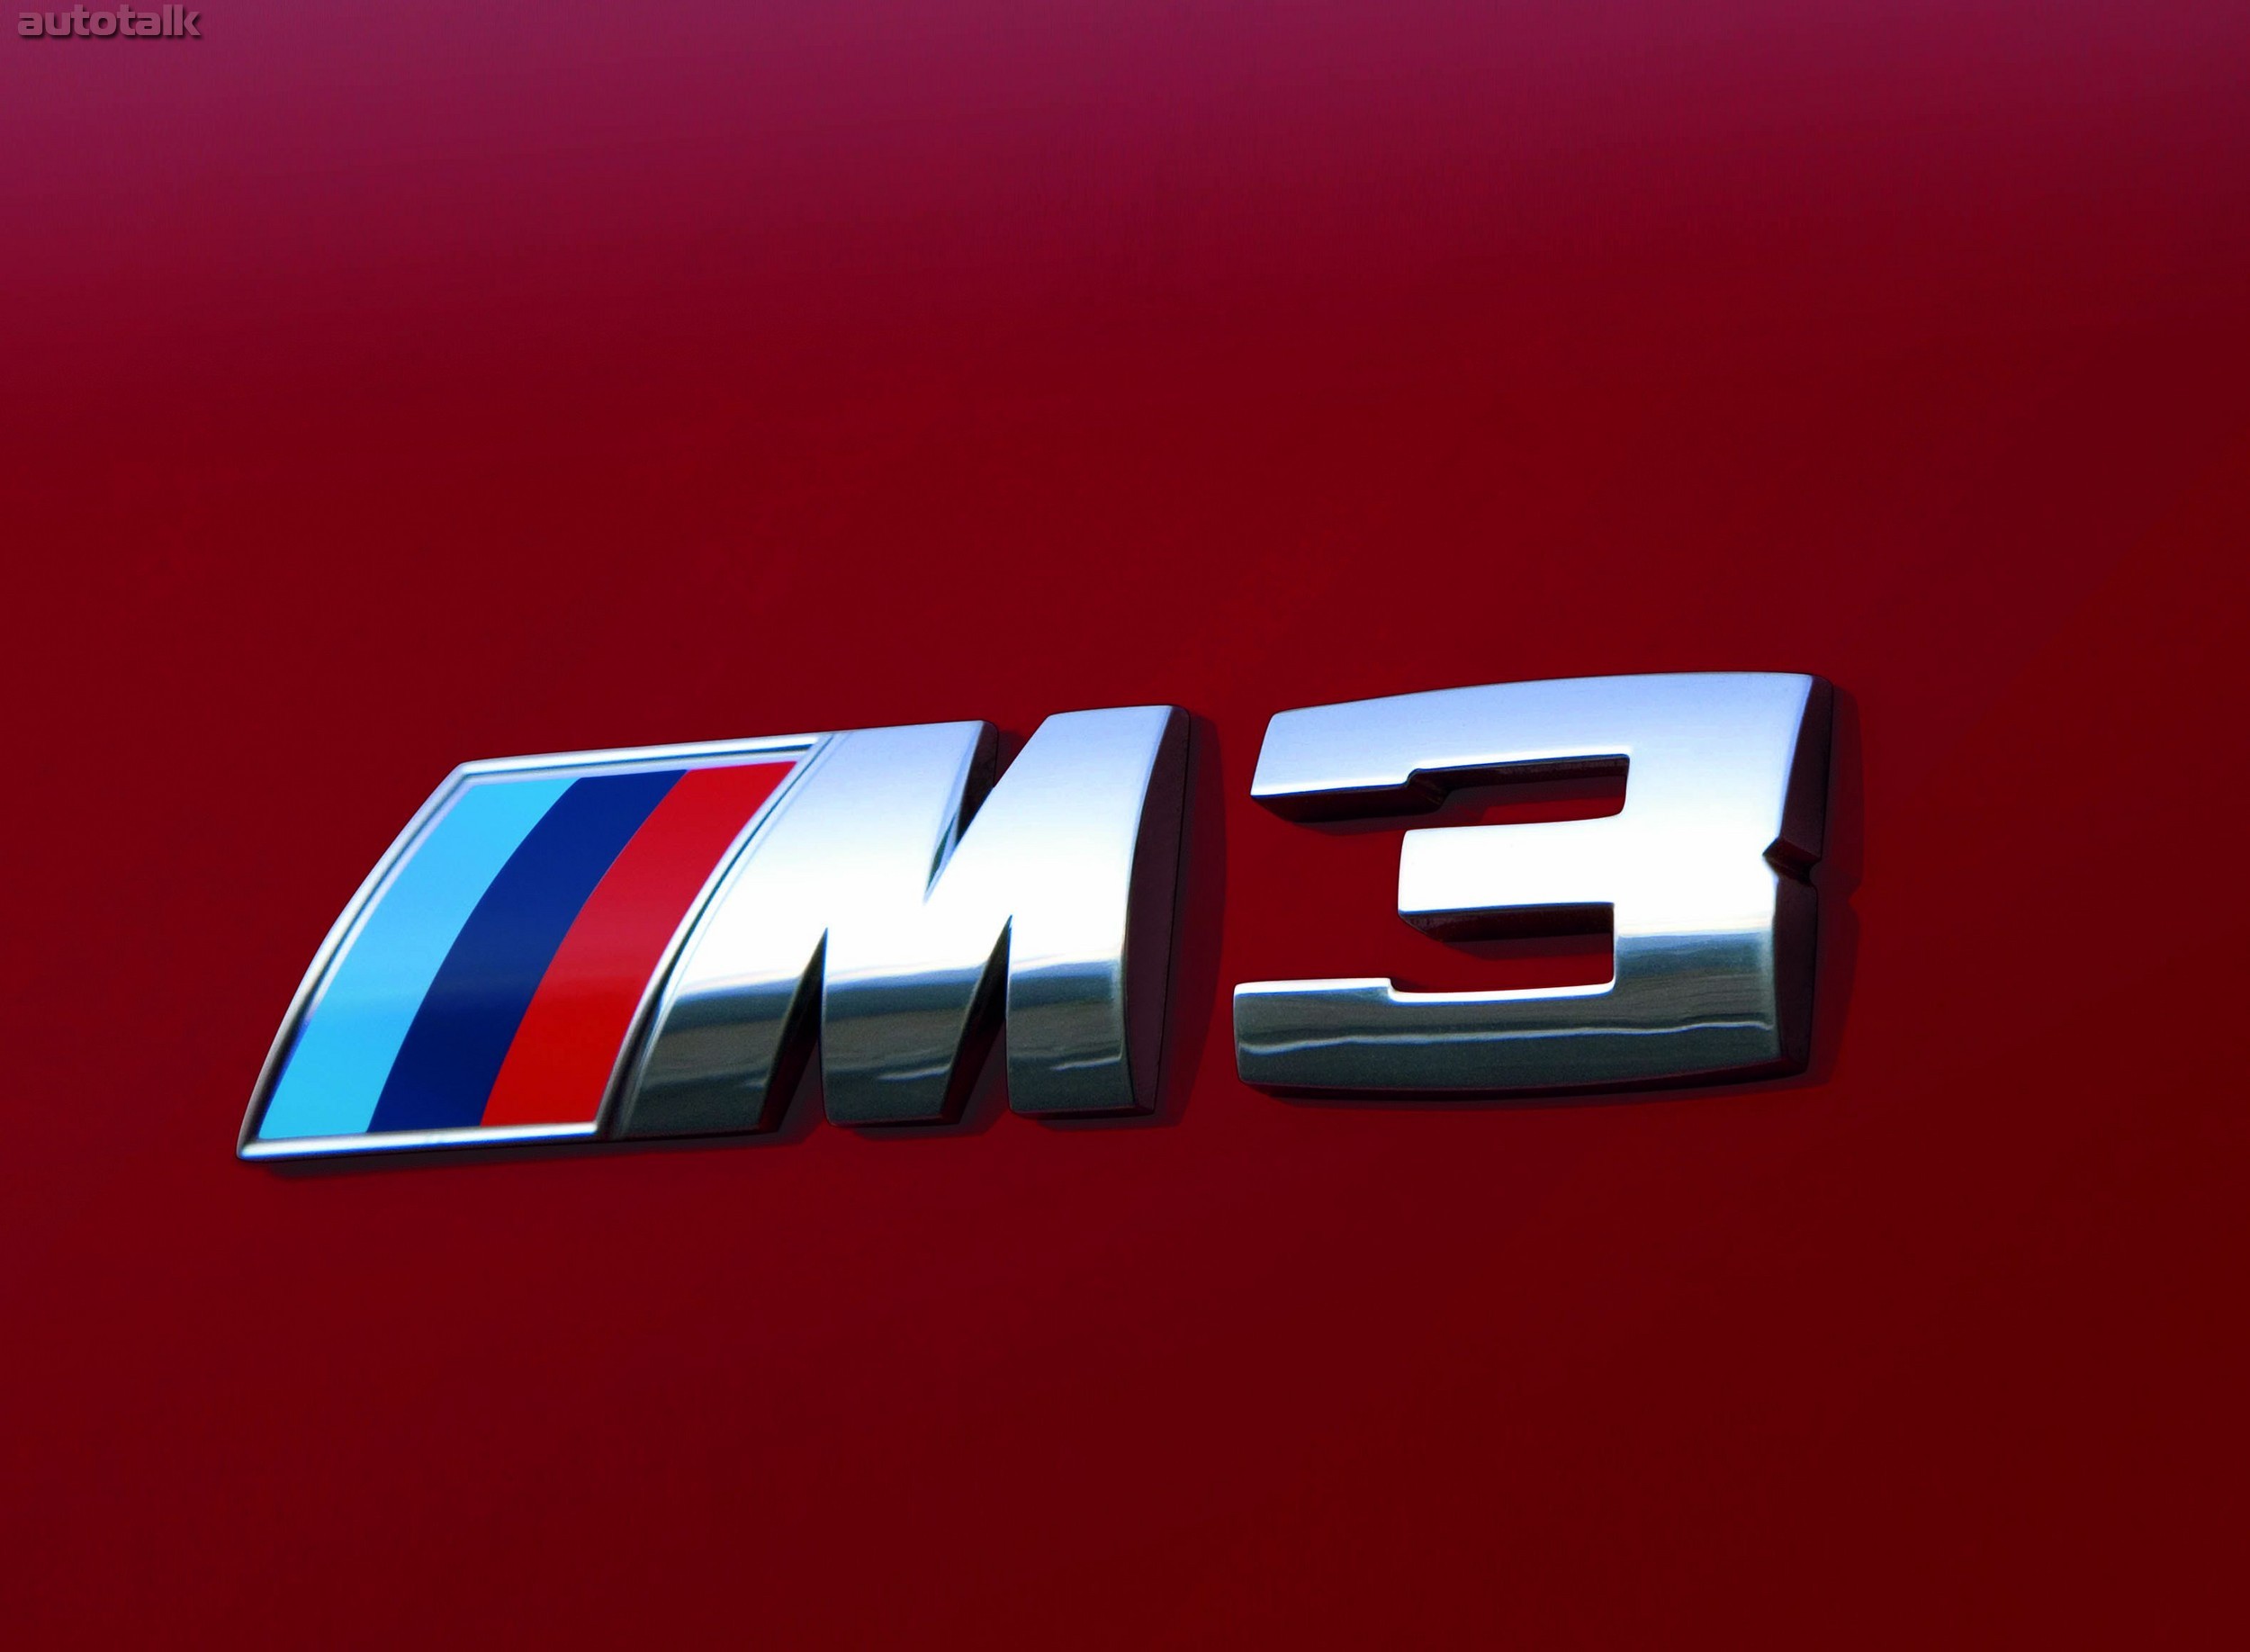 BMW M3 4th Generation